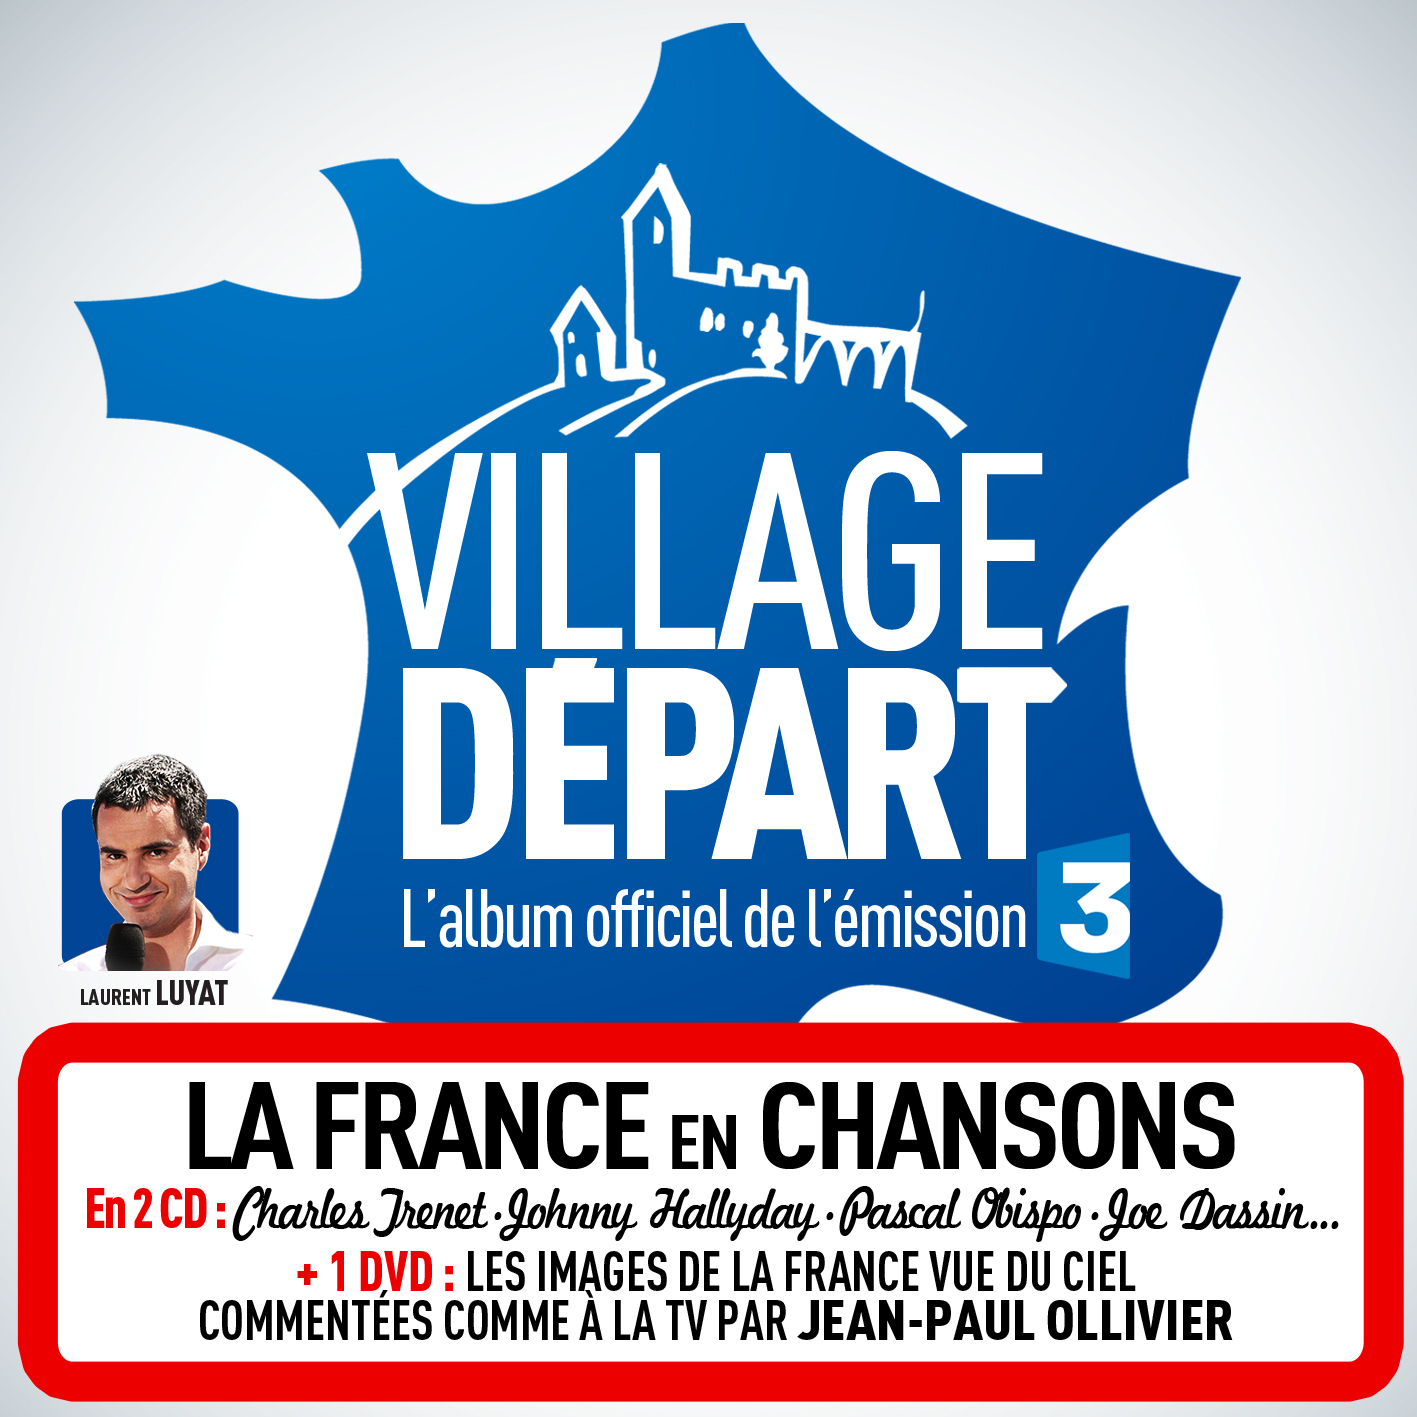 village départ tour de France 2014